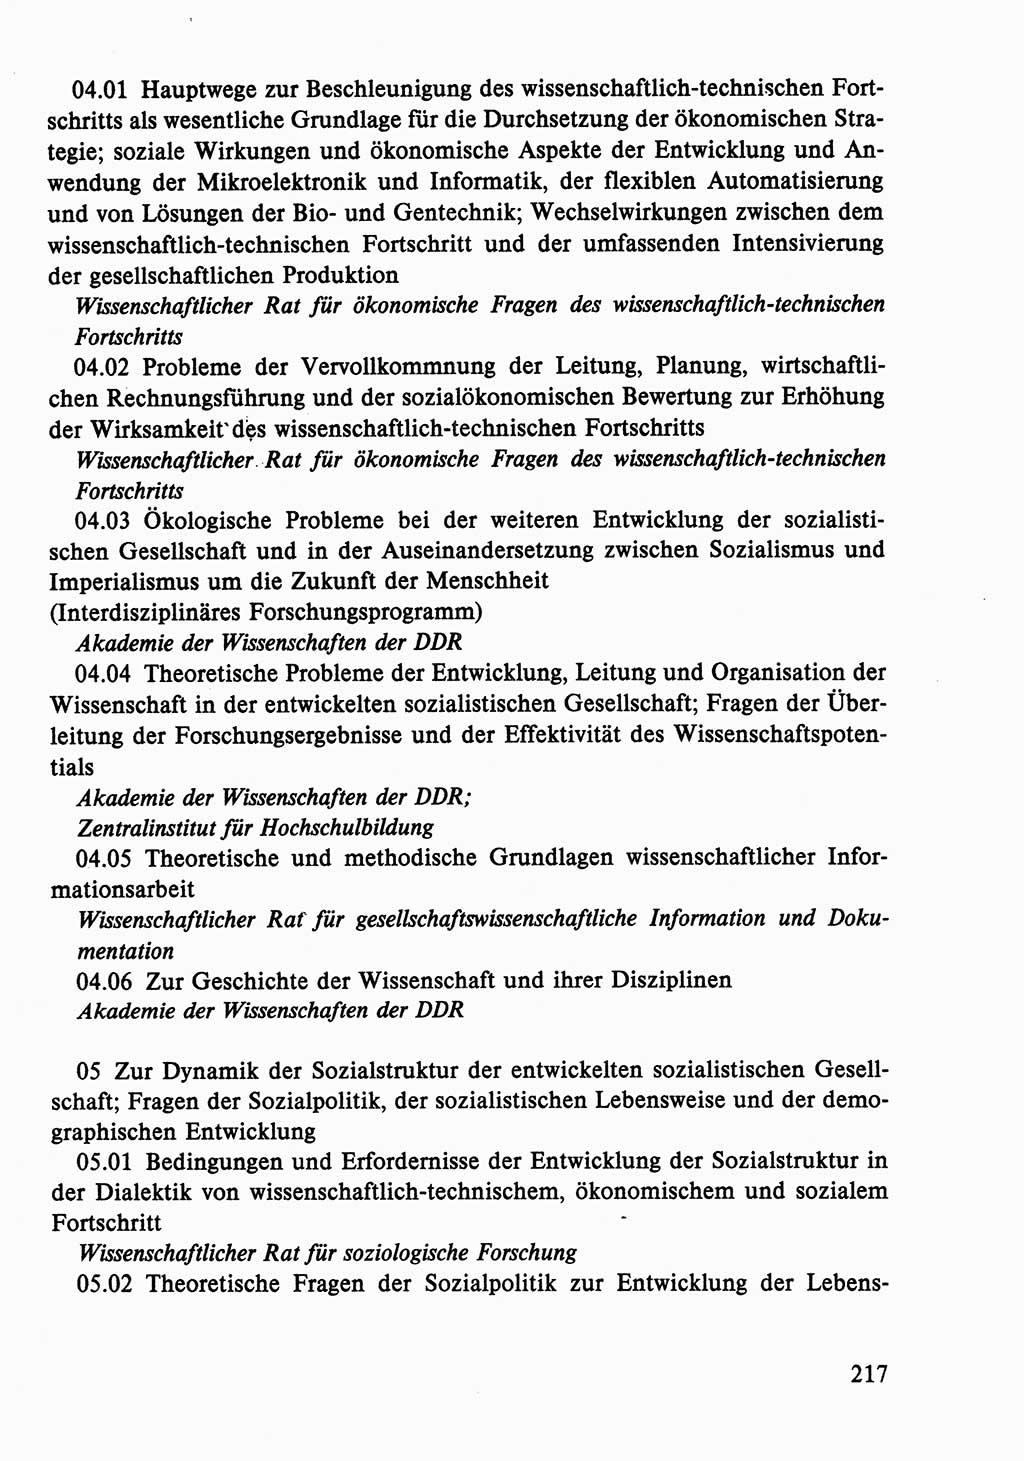 Dokumente der Sozialistischen Einheitspartei Deutschlands (SED) [Deutsche Demokratische Republik (DDR)] 1986-1987, Seite 217 (Dok. SED DDR 1986-1987, S. 217)